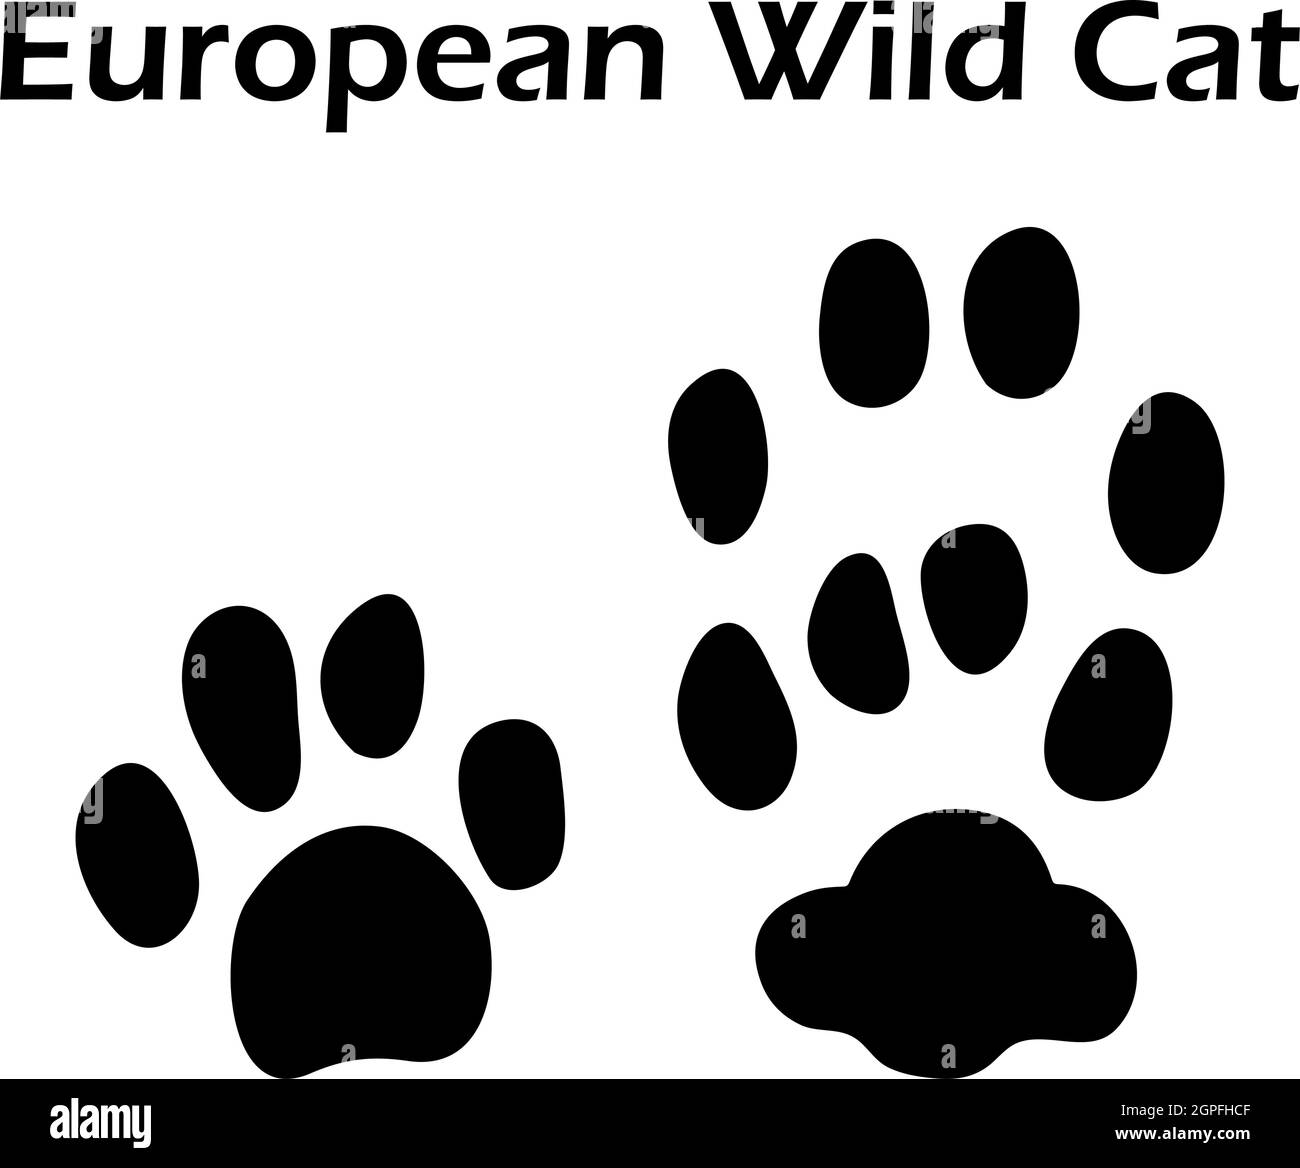 Empreinte européenne de chat sauvage Illustration de Vecteur